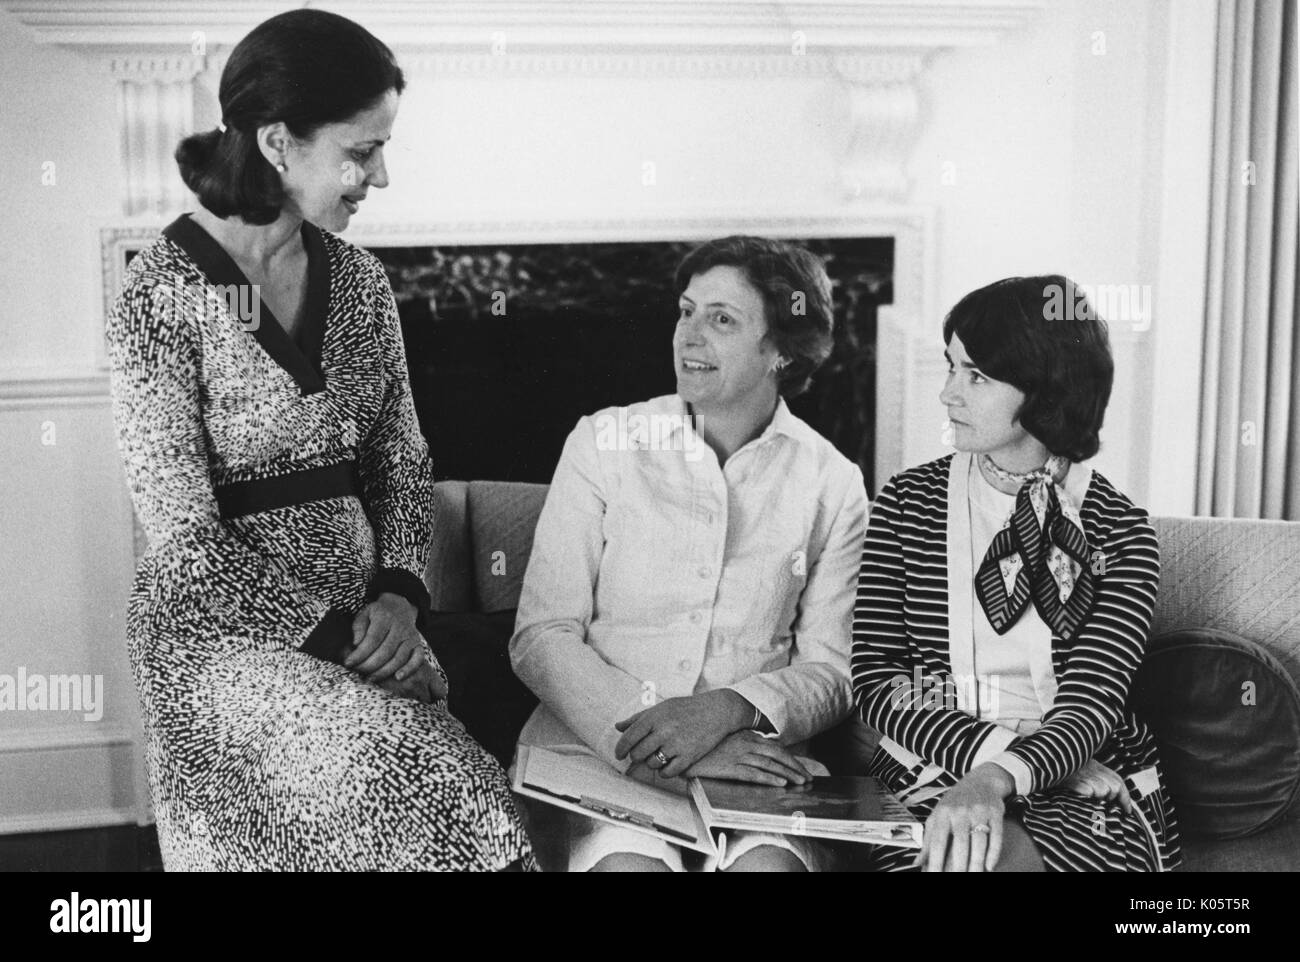 Tre donne seduta su un divano davanti a un caminetto, la donna più a sinistra è seduto sul divano del braccio e la donna al centro è in possesso di un legante sul suo grembo, centennial sferico alla Johns Hopkins University, 1970. Foto Stock